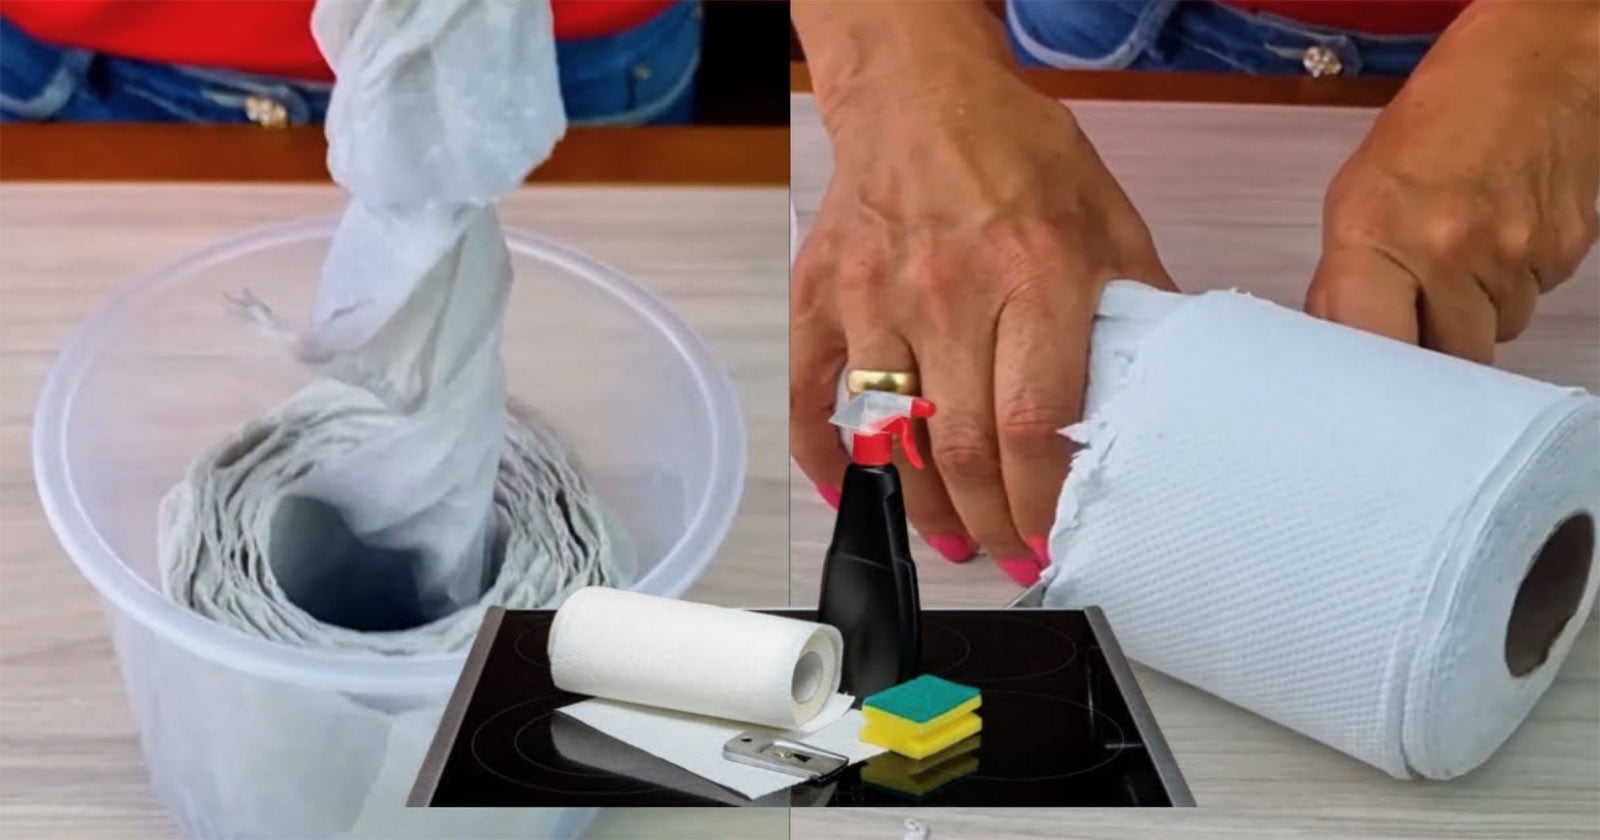 Maneiras incríveis de utilizar papel toalha em casa que você talvez nem sabia